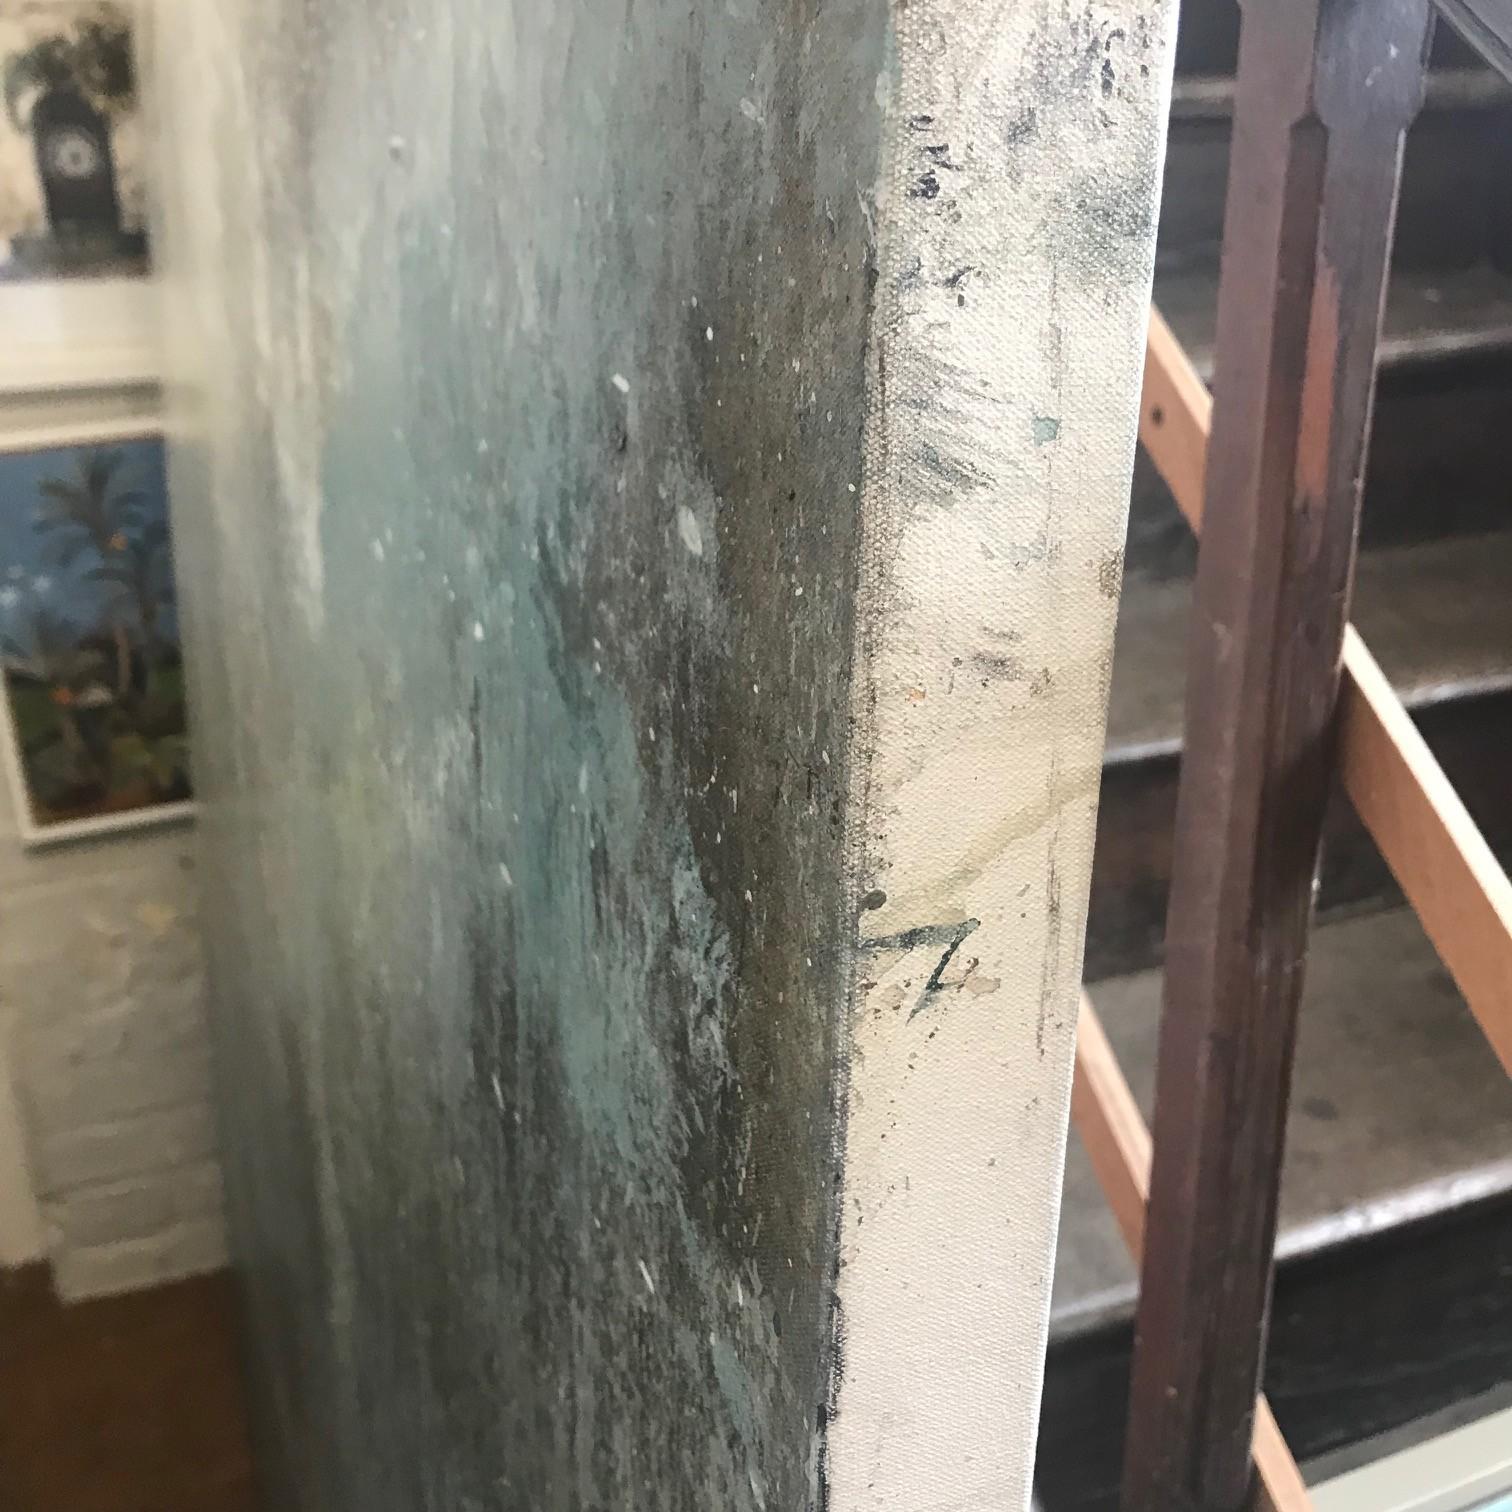 Rückkehr der Wolken von James Bonstow
Original Öl auf Leinwand
150 cm x 150 cm

Ungerahmt verkauft

